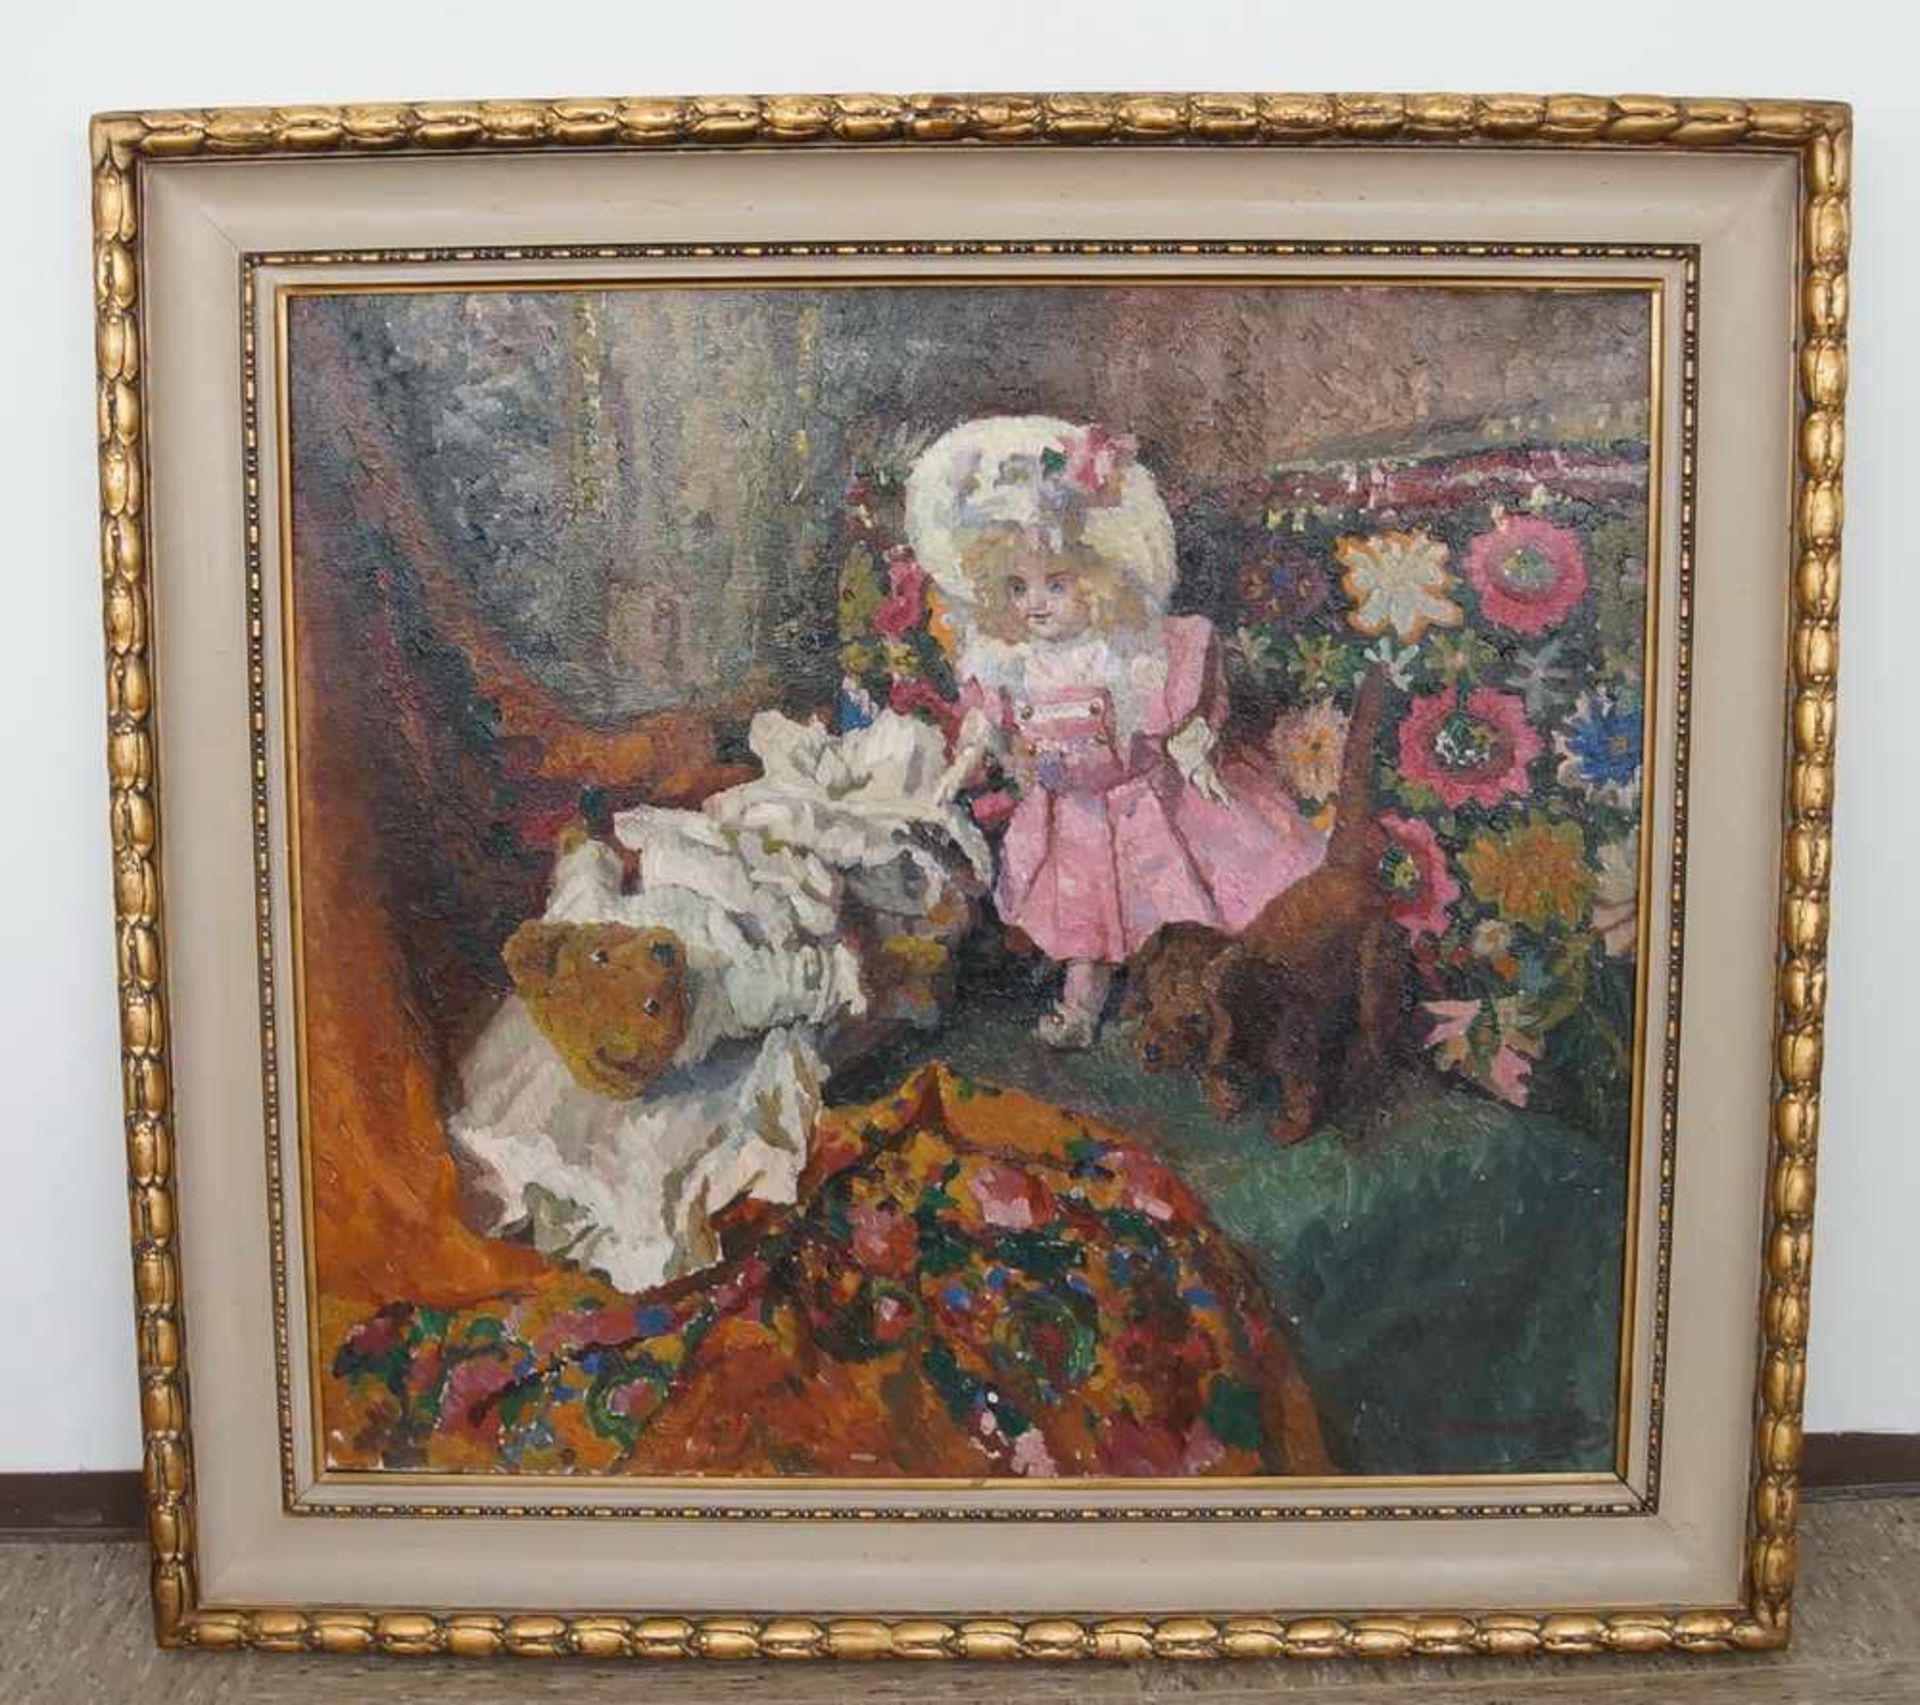 Liebliches Gemälde in Öl auf Leinwand, gerahmt, Kind mit Teddybär und Hund, 103x111cm- - -24.00 %